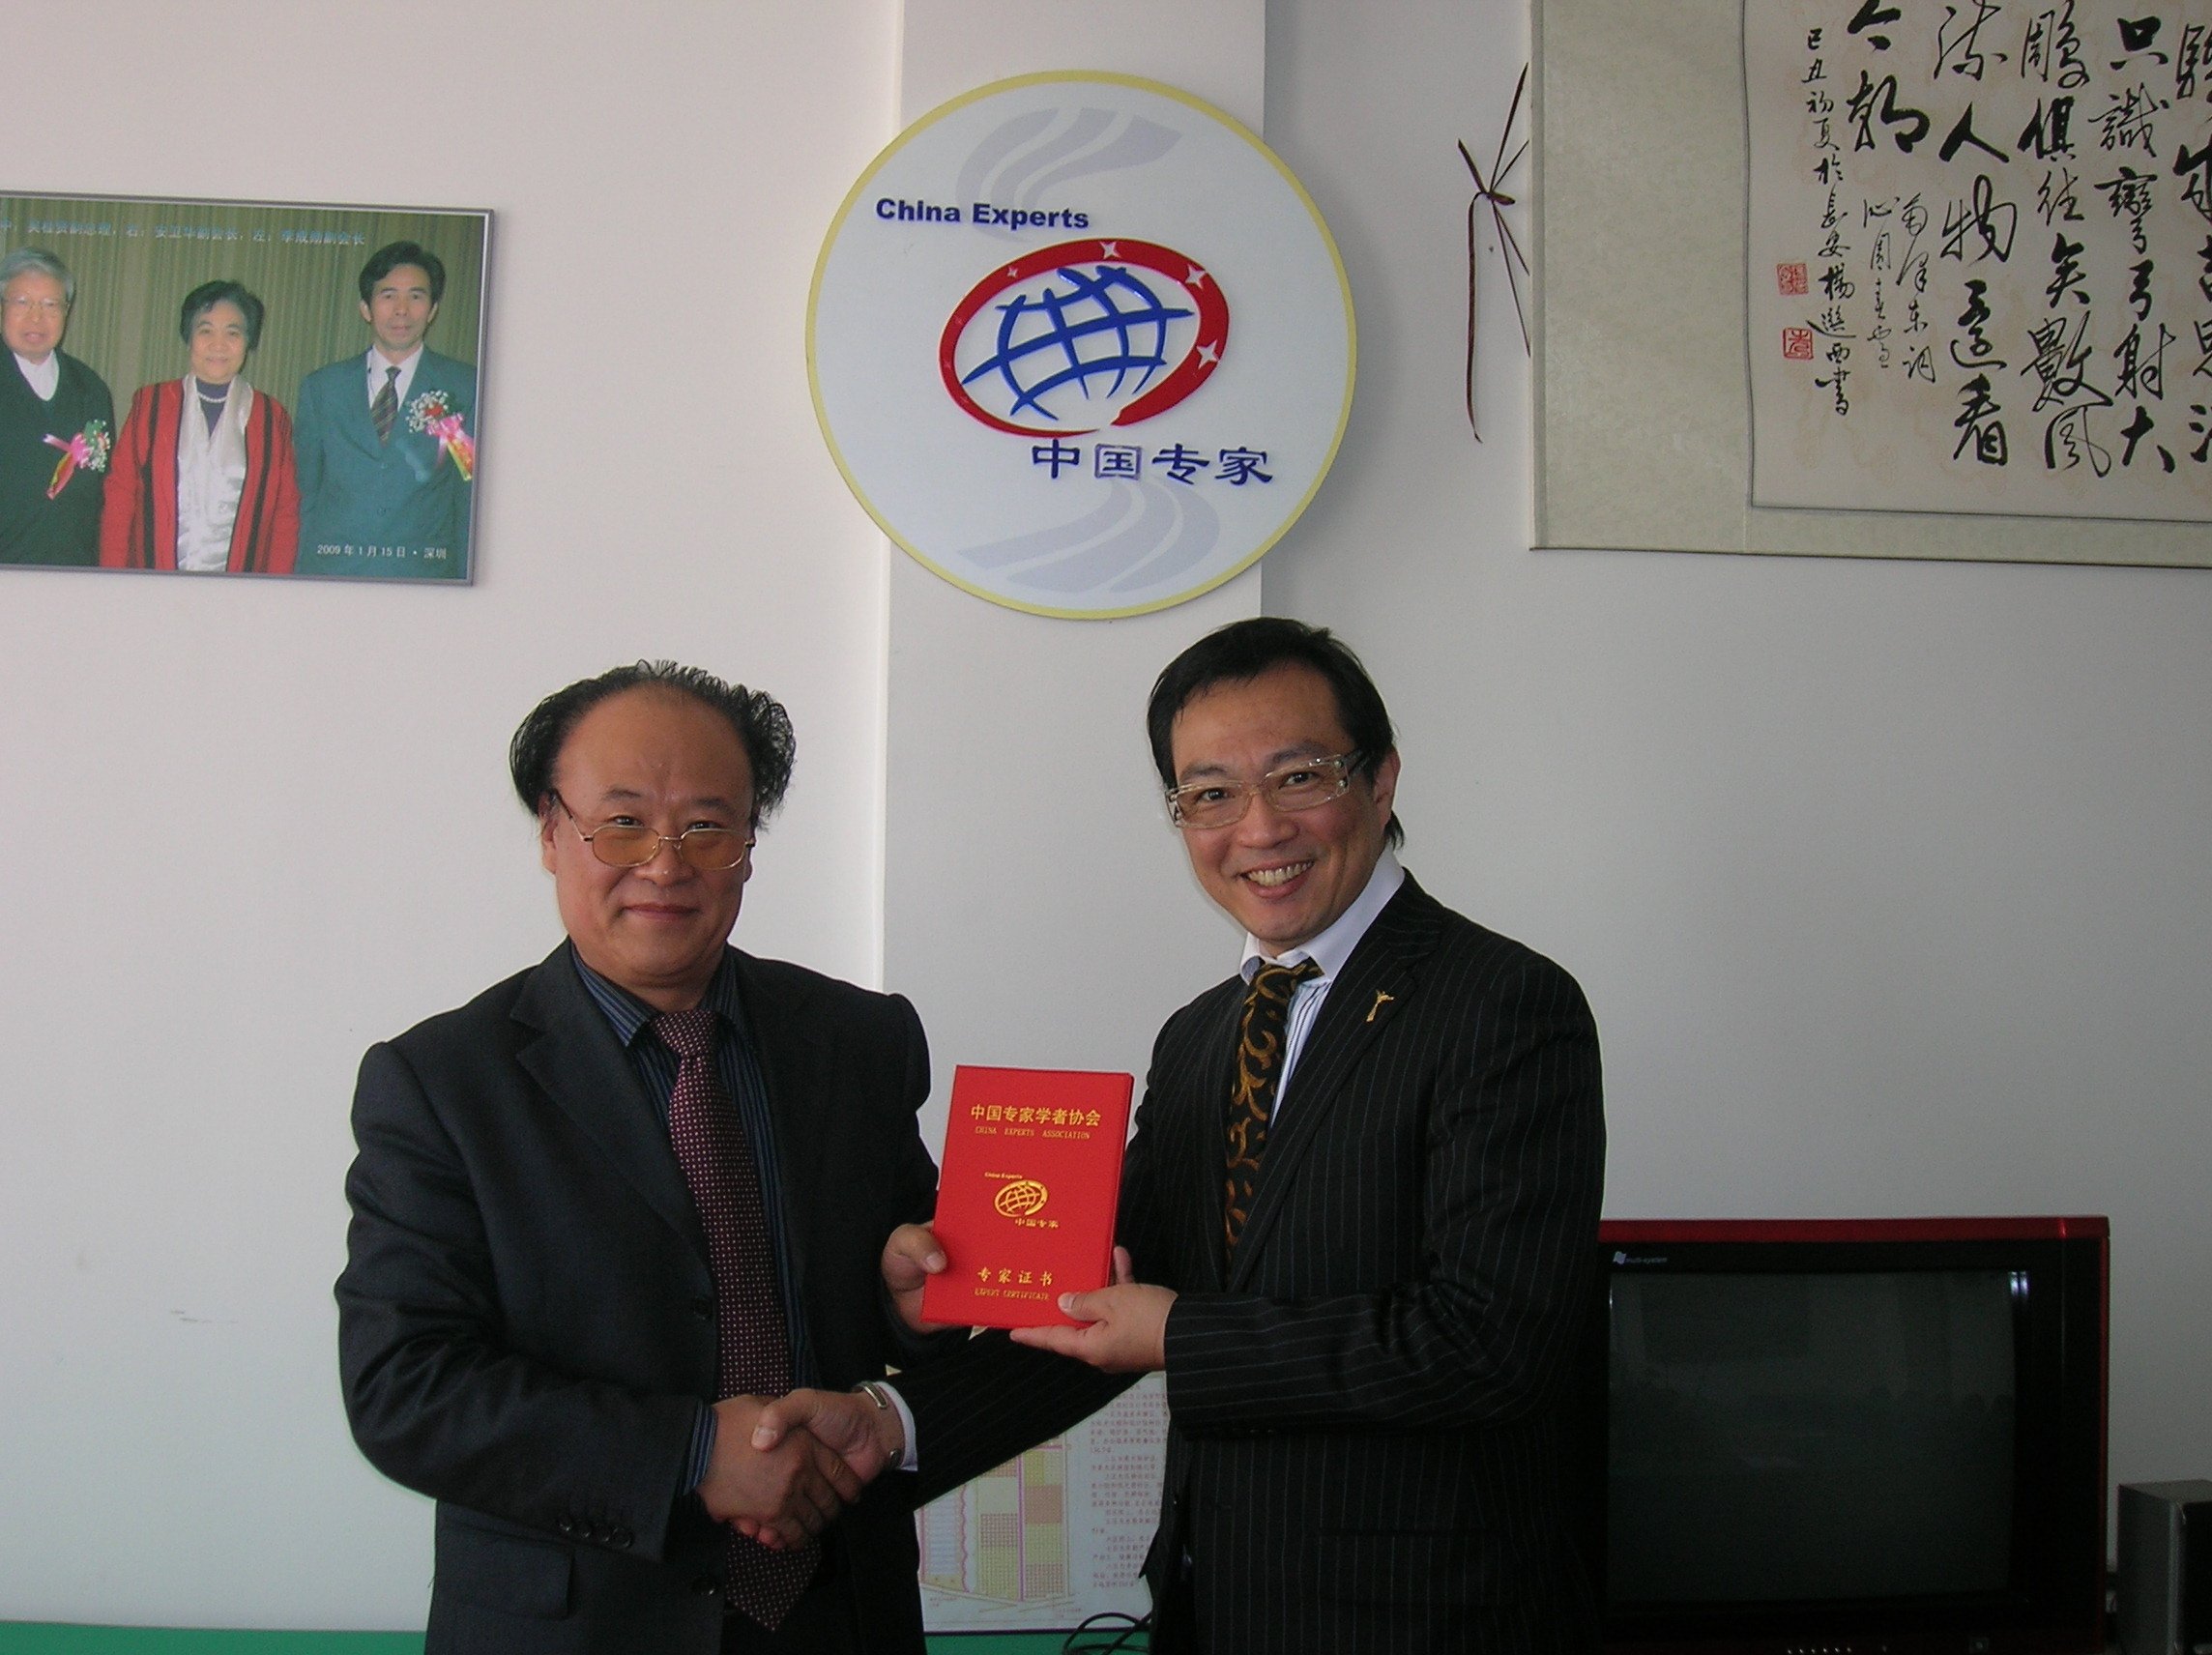 向日本黄谷先生颁发中国专家学者协会证书